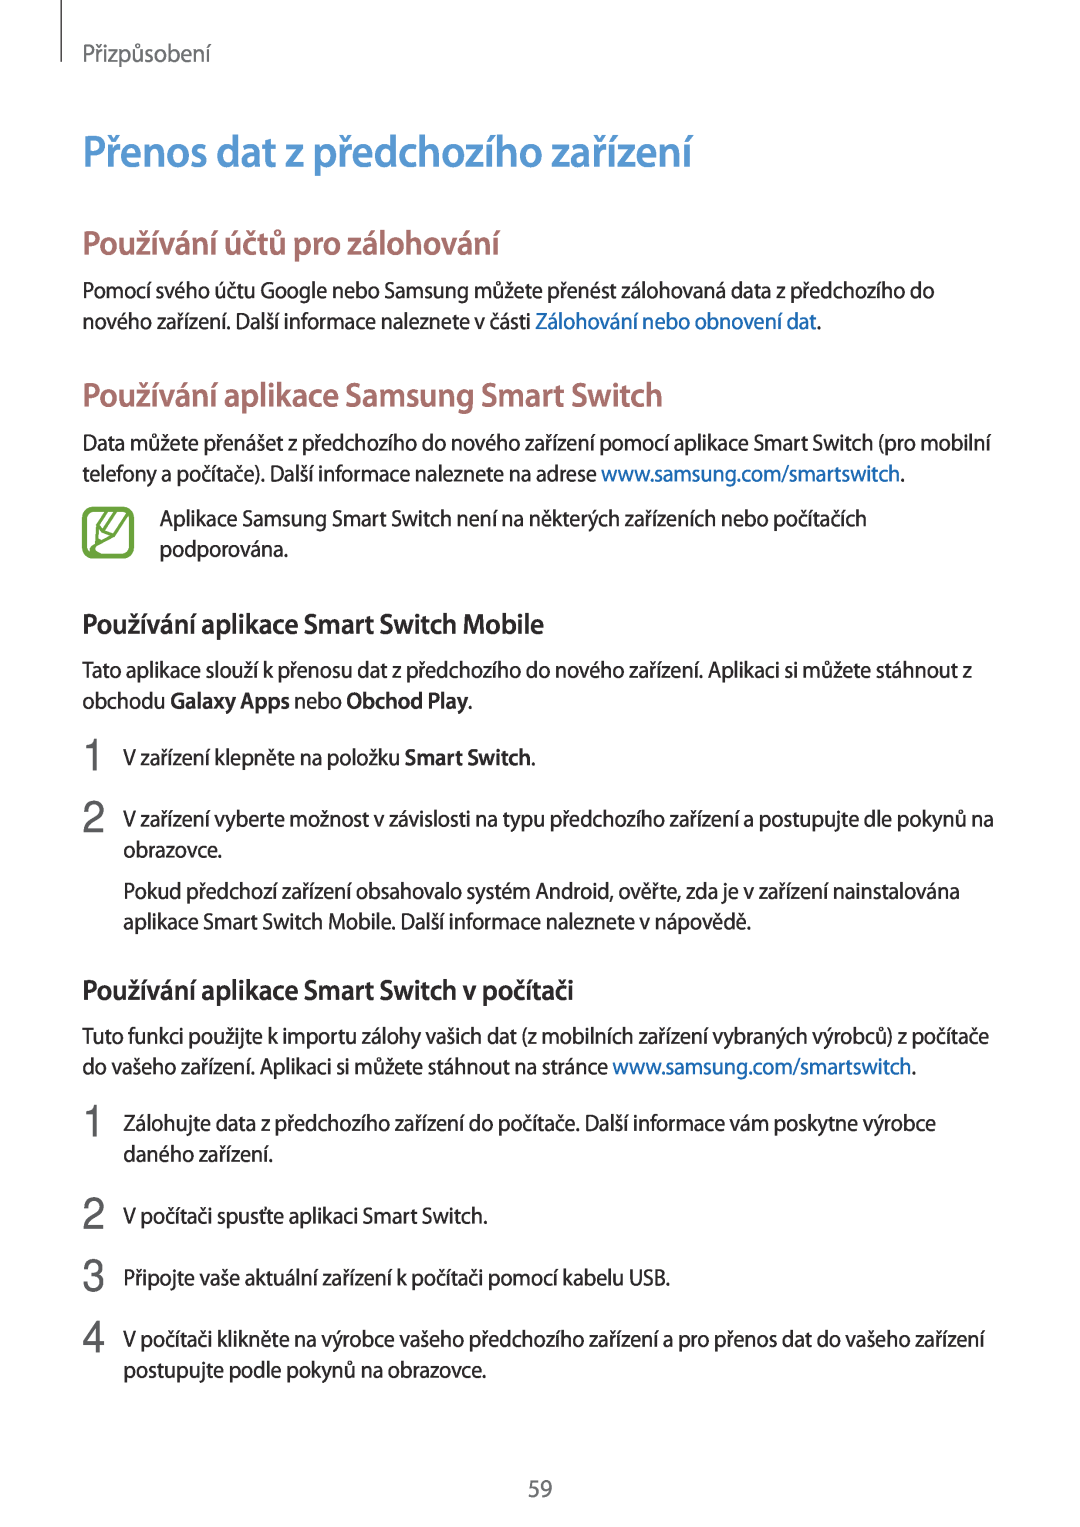 Samsung SM-T700NTSAATO, SM-T700NZWAXEO manual Přenos dat z předchozího zařízení, Používání účtů pro zálohování, Přizpůsobení 